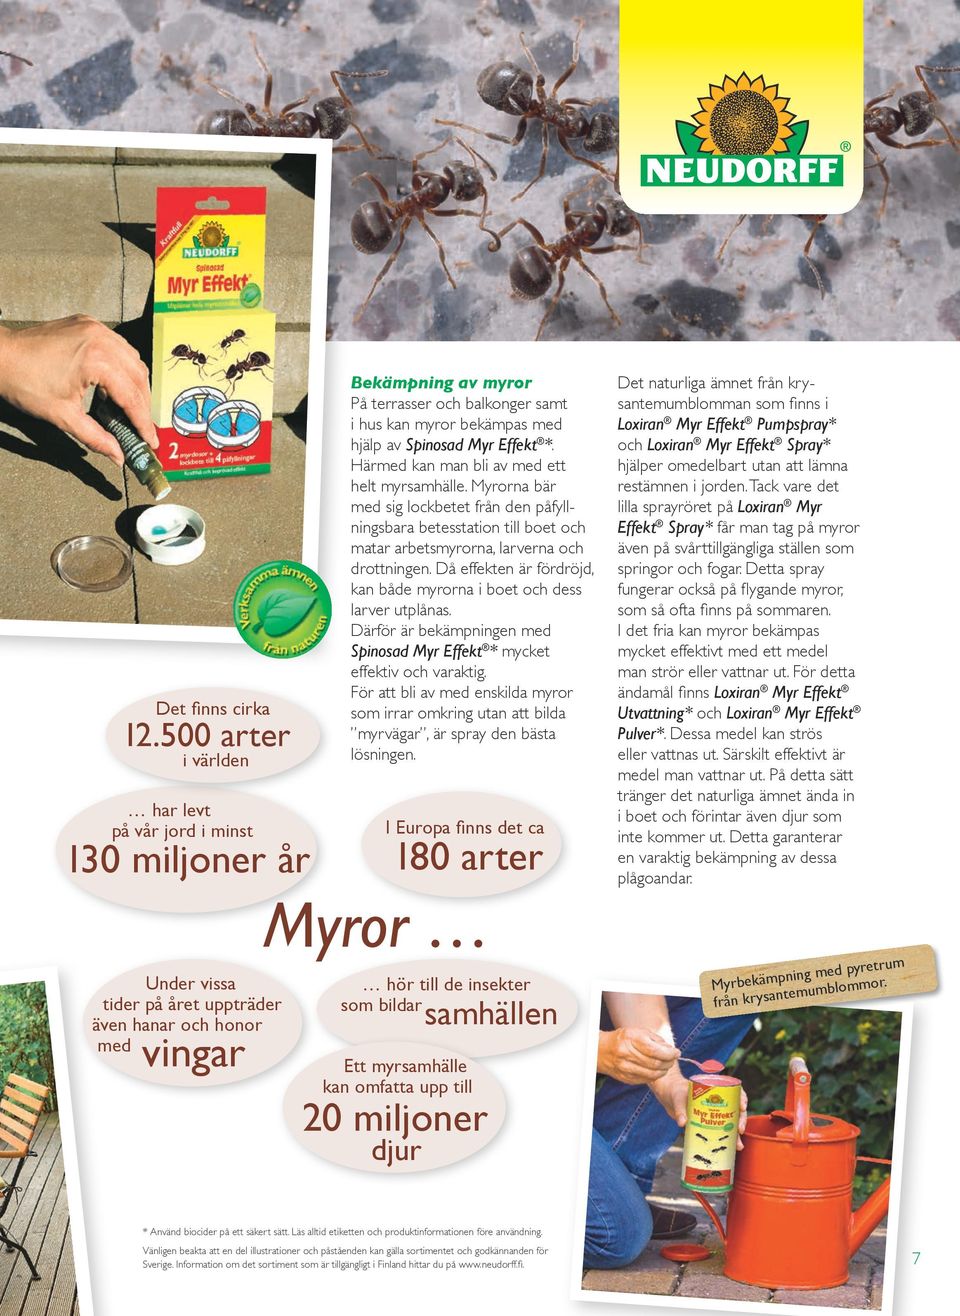 myror bekämpas med hjälp av Spinosad Myr Effekt *. Härmed kan man bli av med ett helt myrsamhälle.